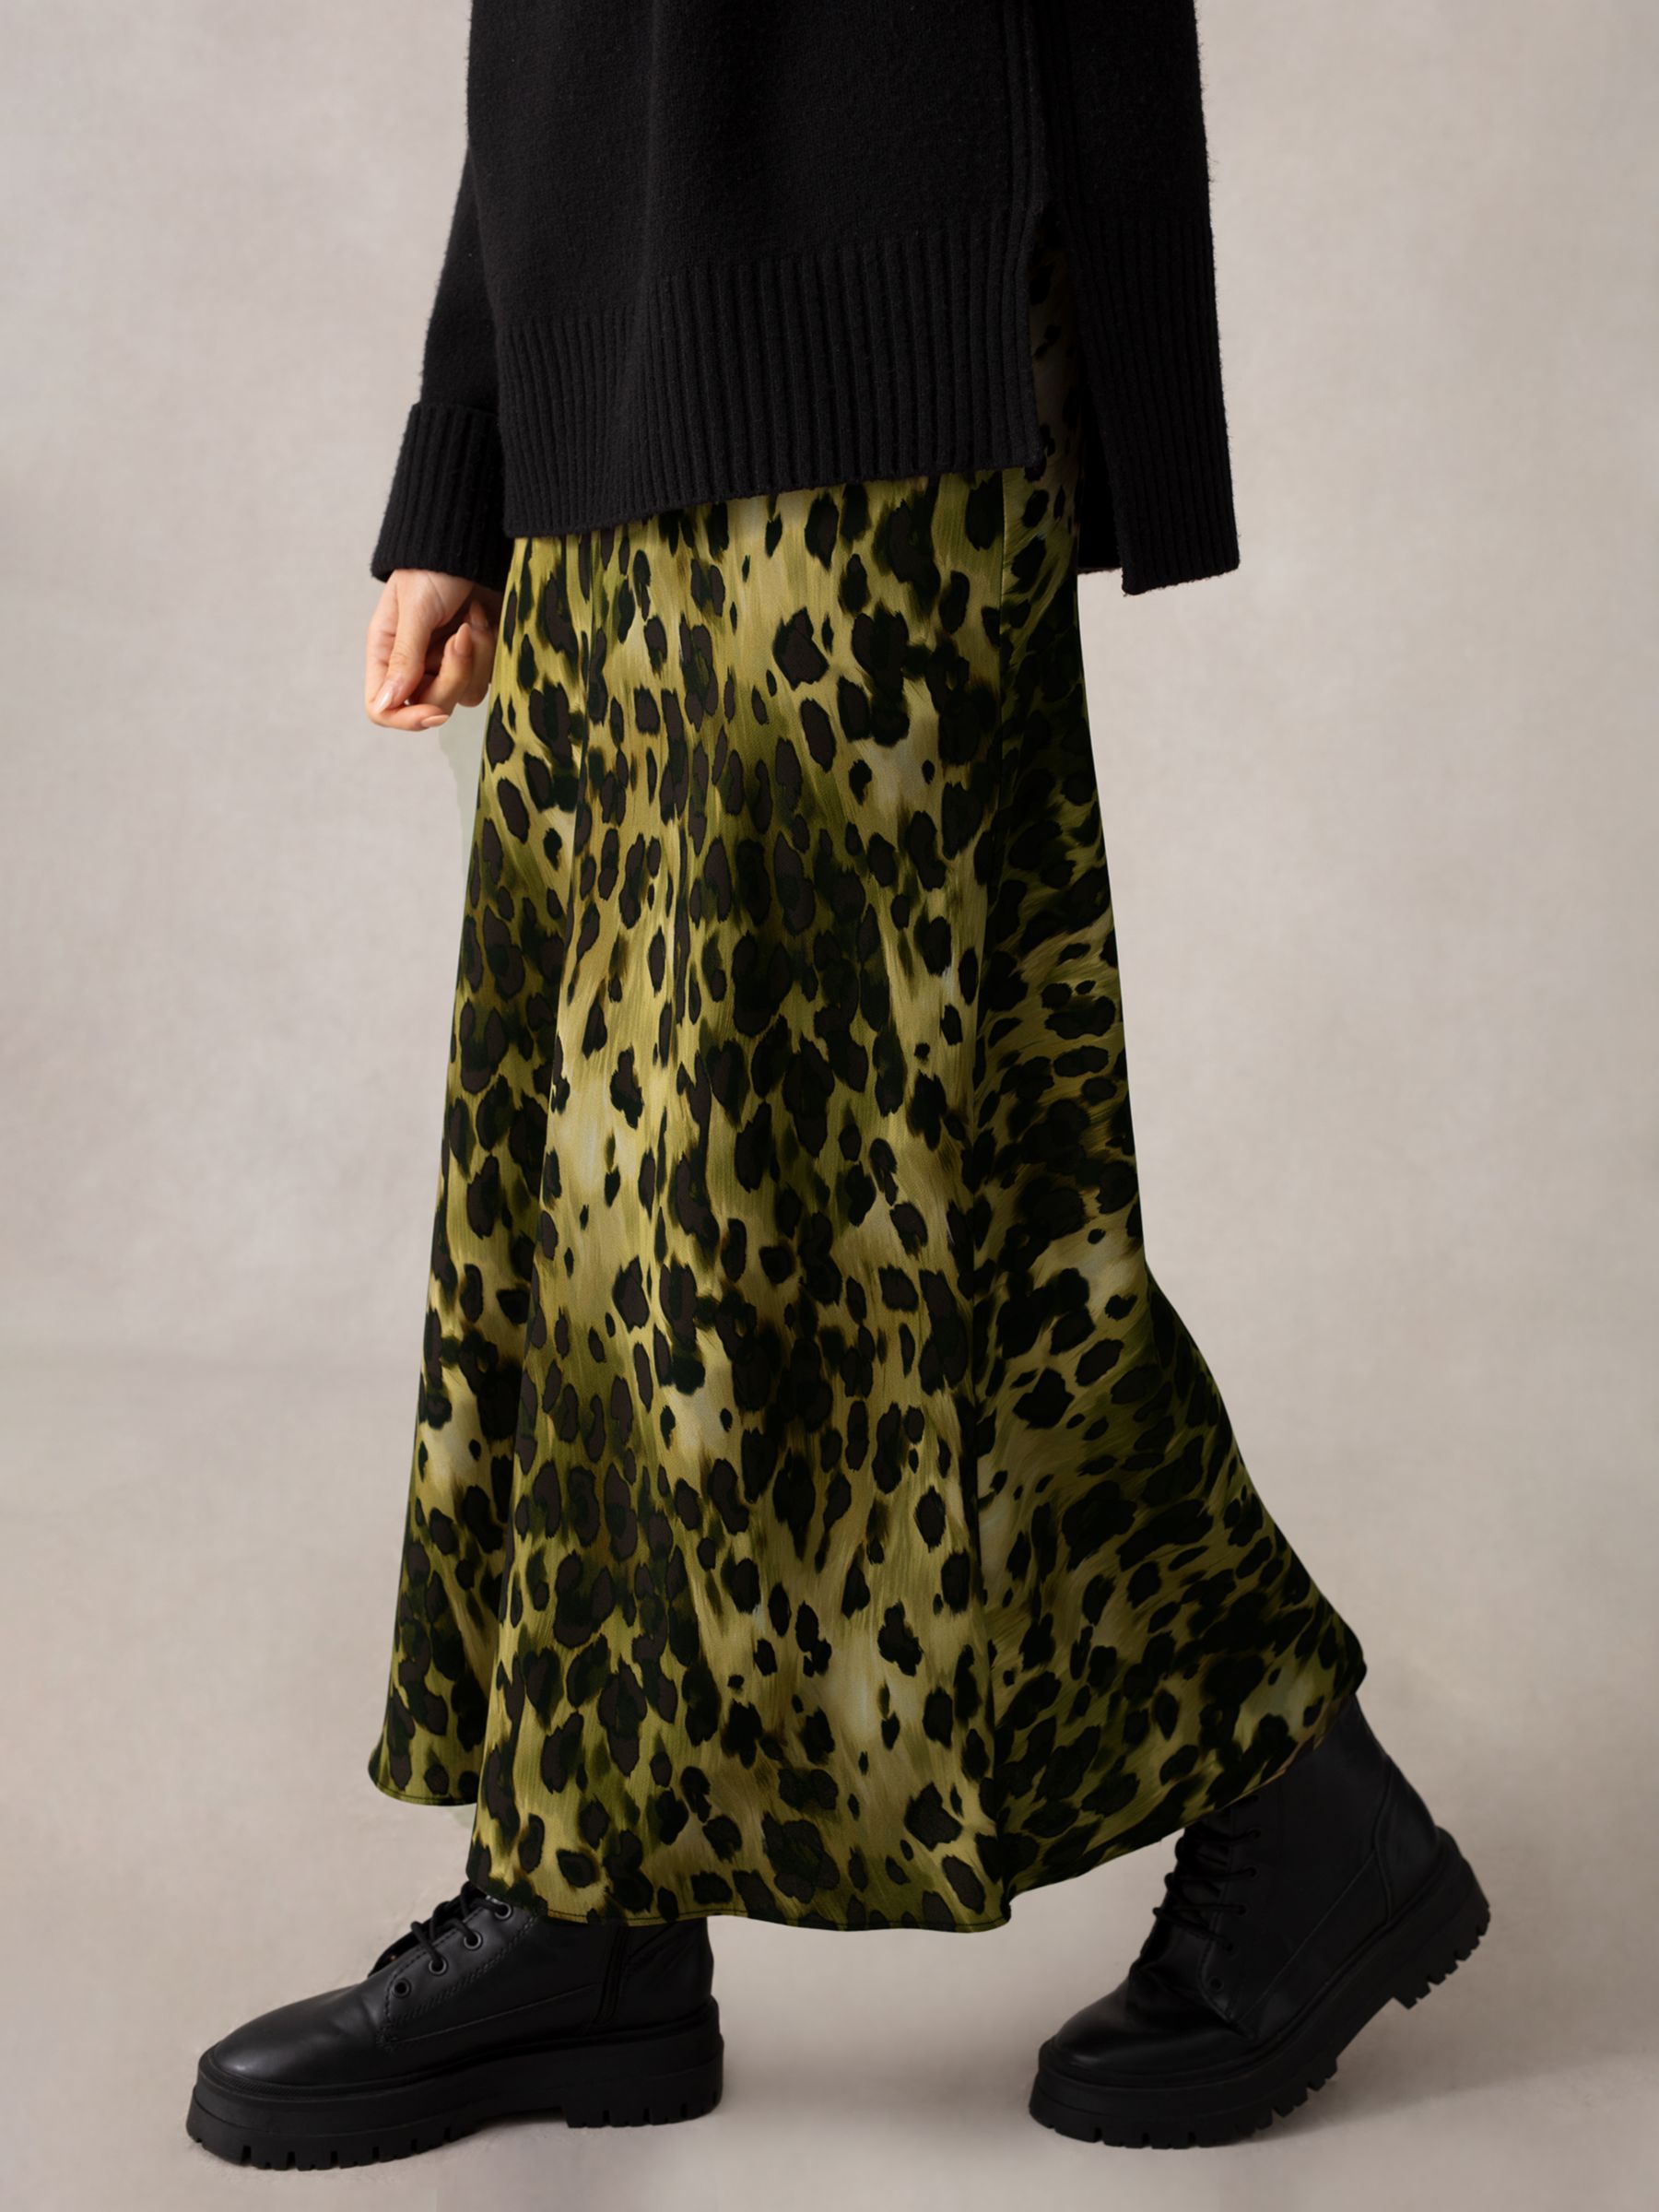 Ro&Zo Soft Leopard Print Bias Cut Midi Skirt, Black/Multi, 6